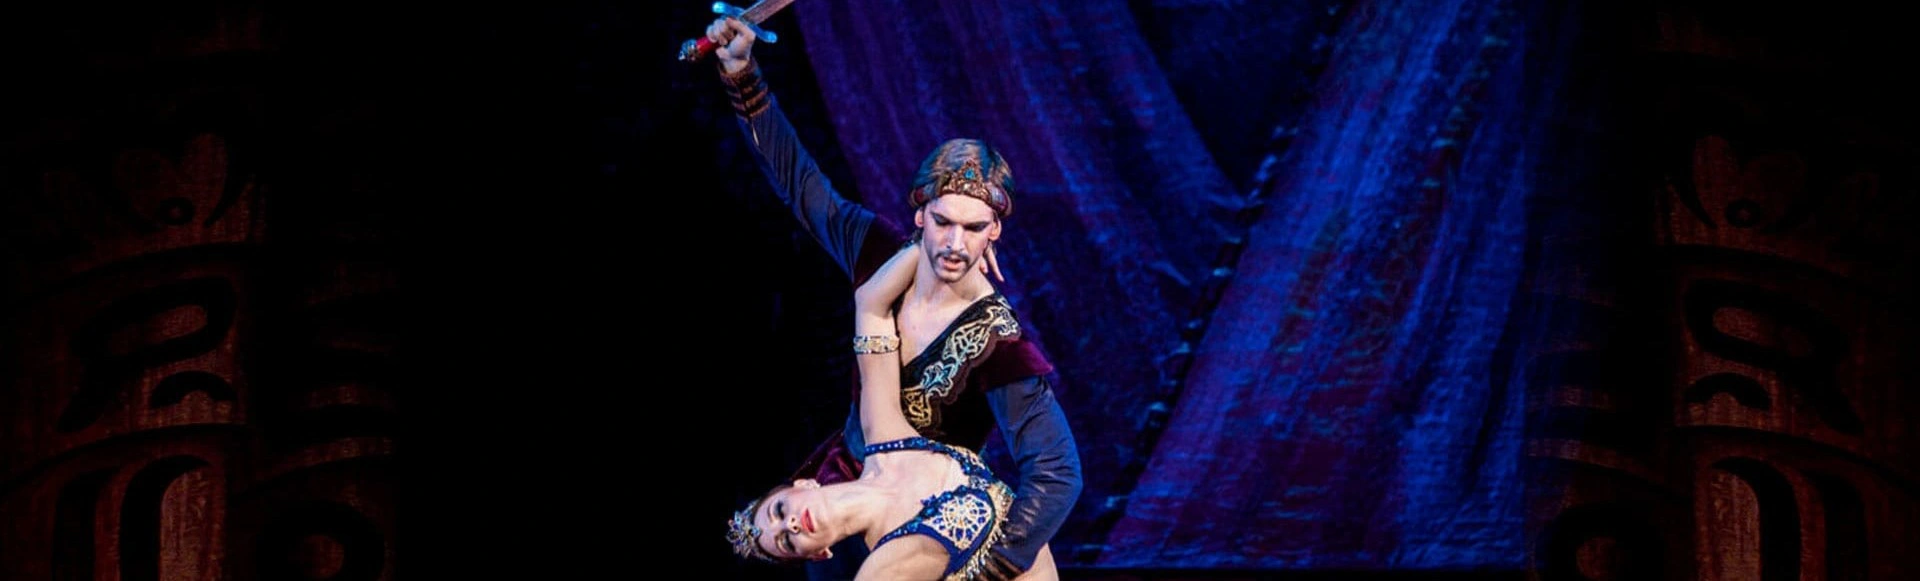 В Государственном Кремлевском дворце показали балет "Тысяча и одна ночь"
